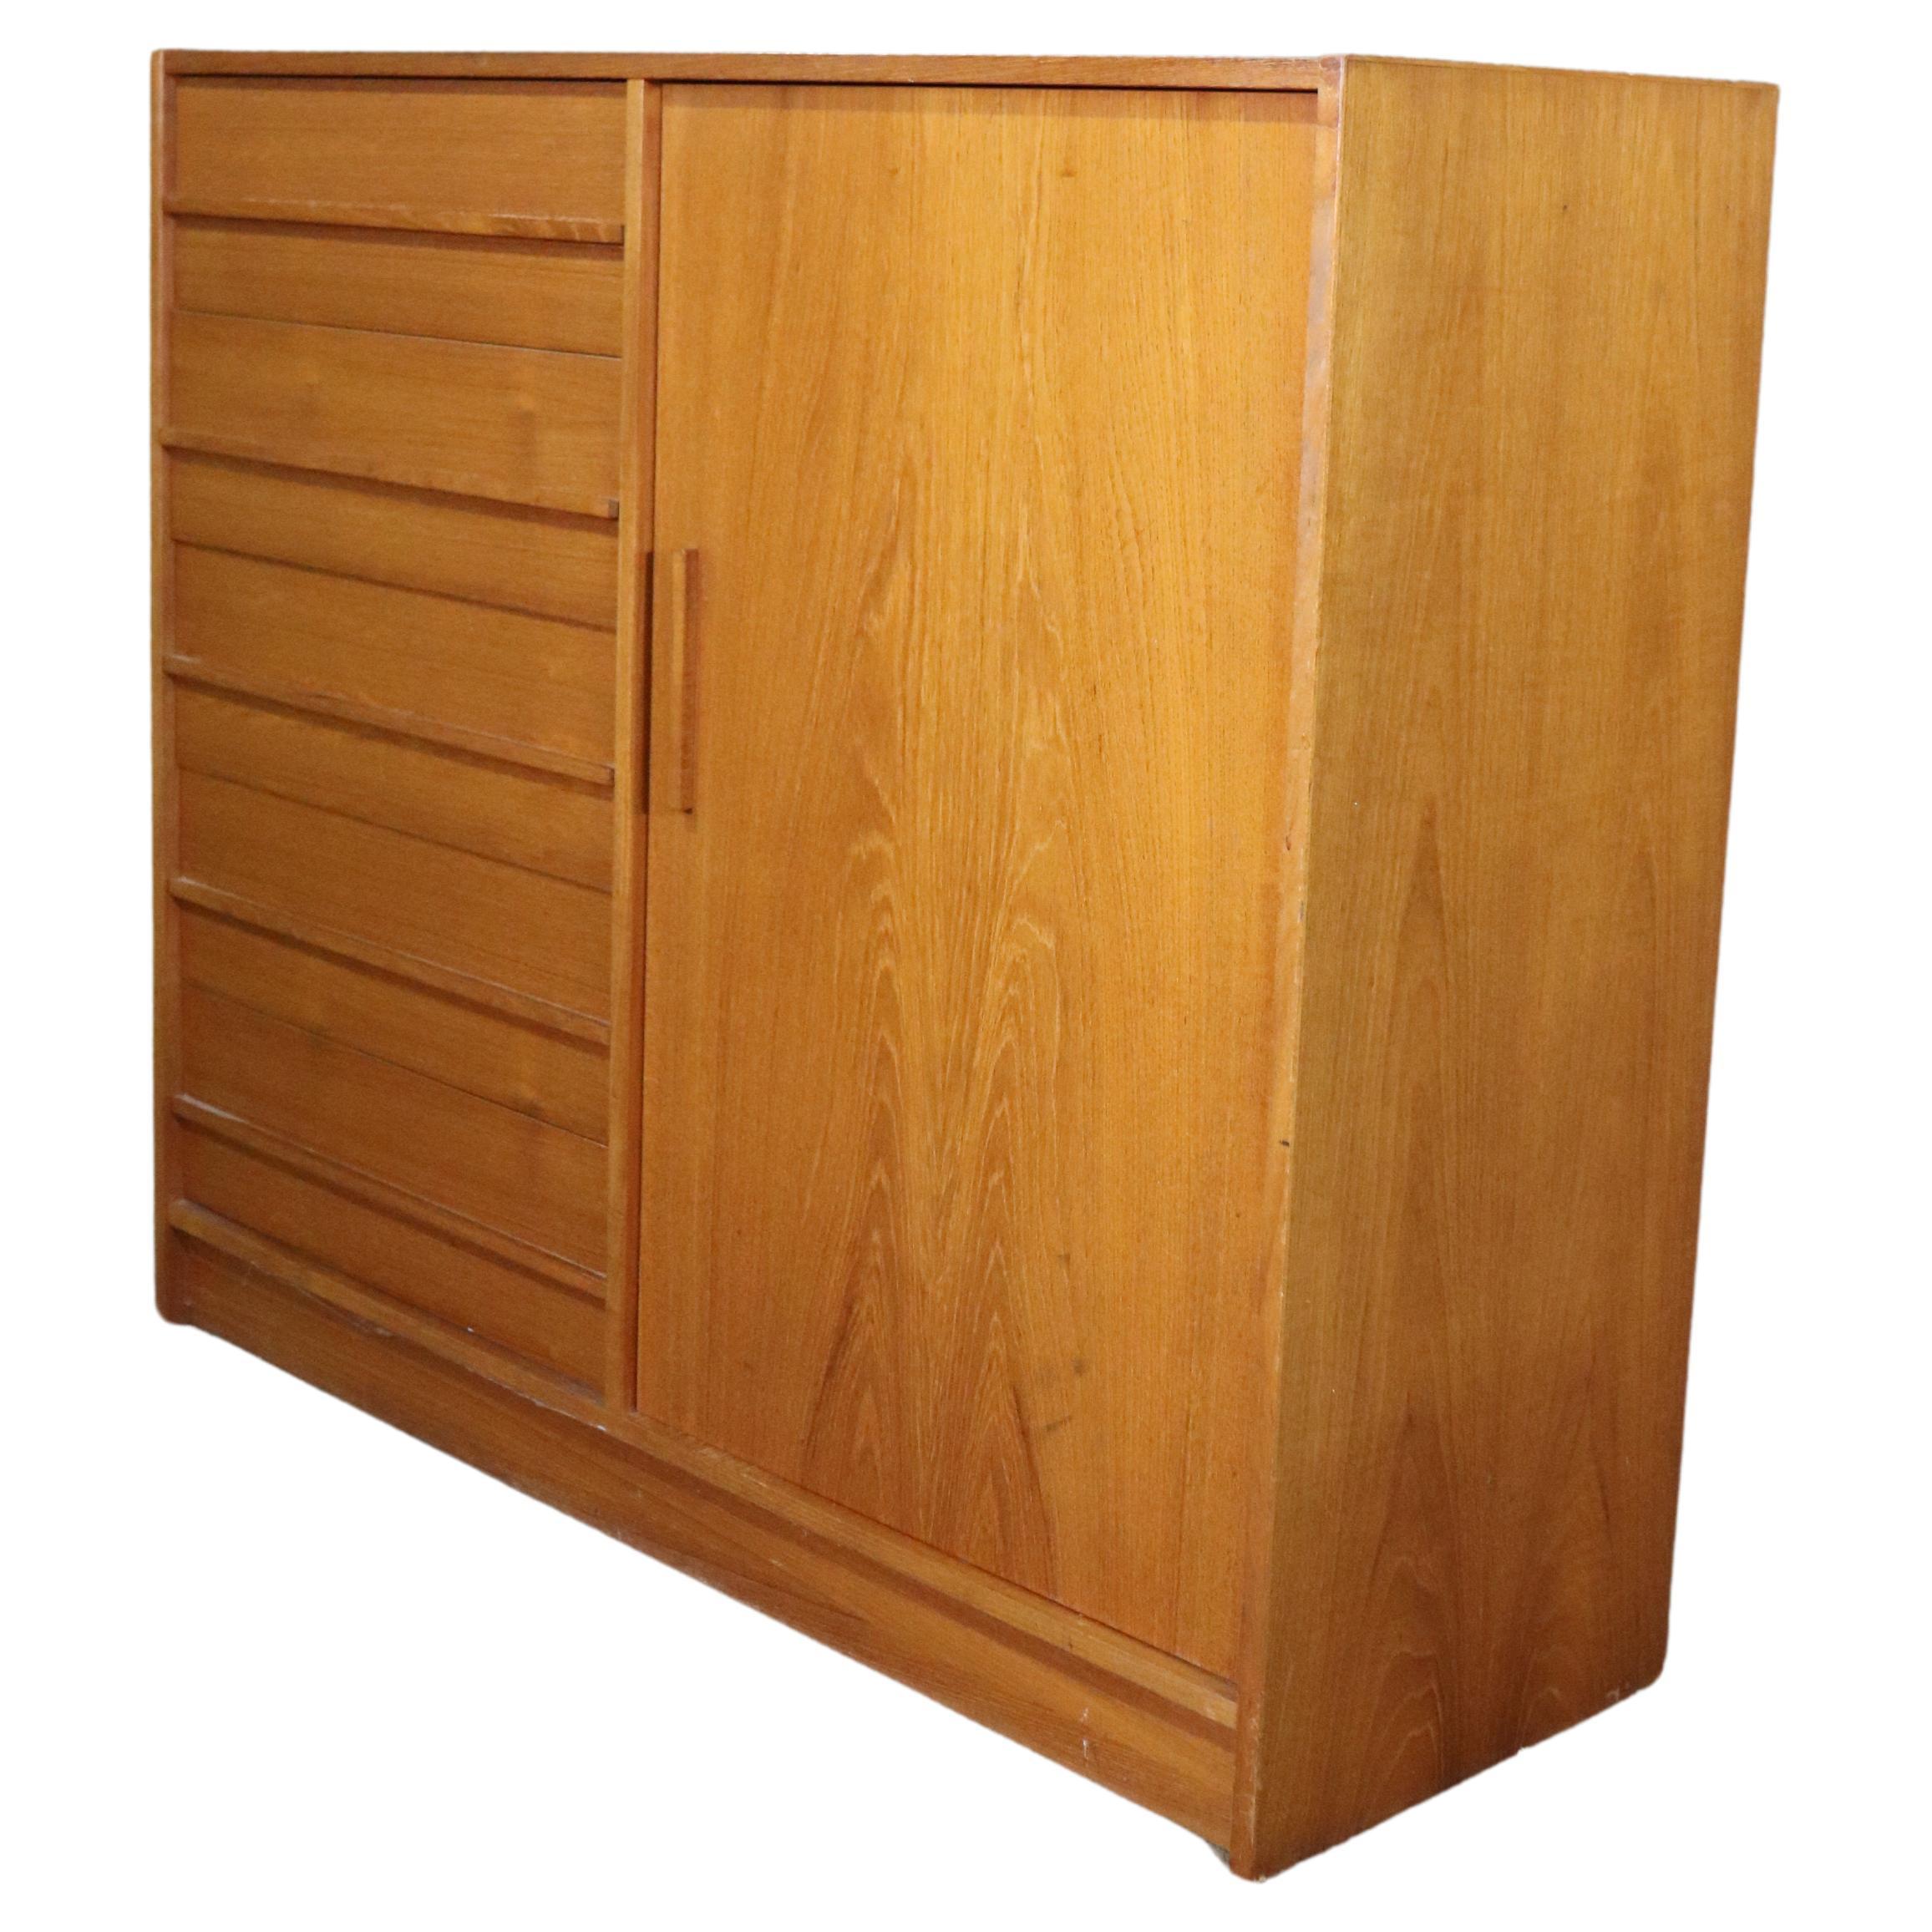 Teak Dresser & Cabinet For Sale